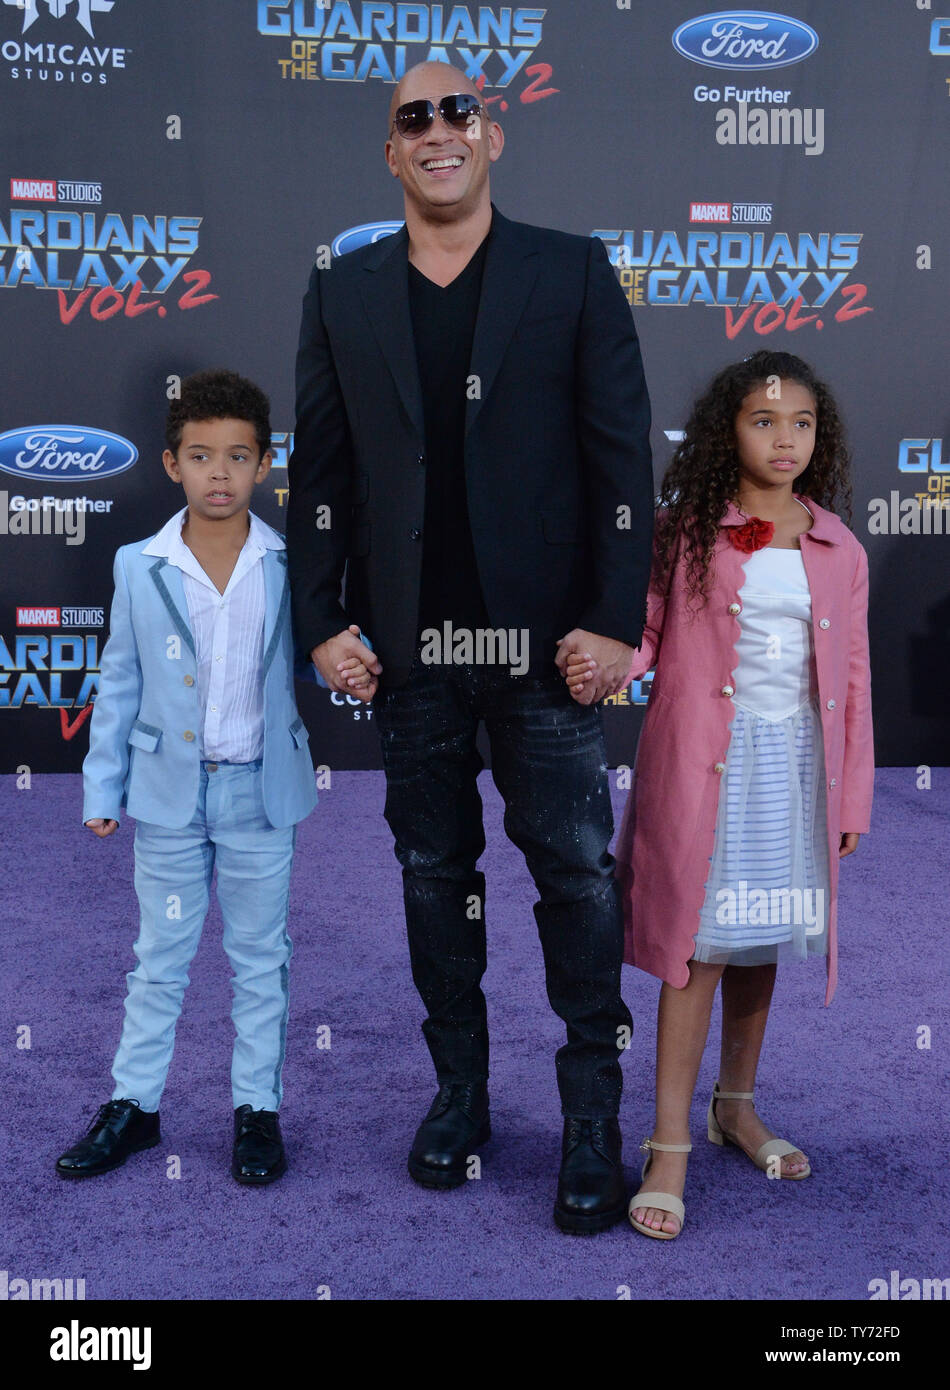 Acteur, Vin Diesel et son fils Vincent Sinclair (L) et sa fille Hania Riley  Sinclair assister à la première mondiale de la motion picture sci-fi  'gardiens de la Galaxie Tome 2' à